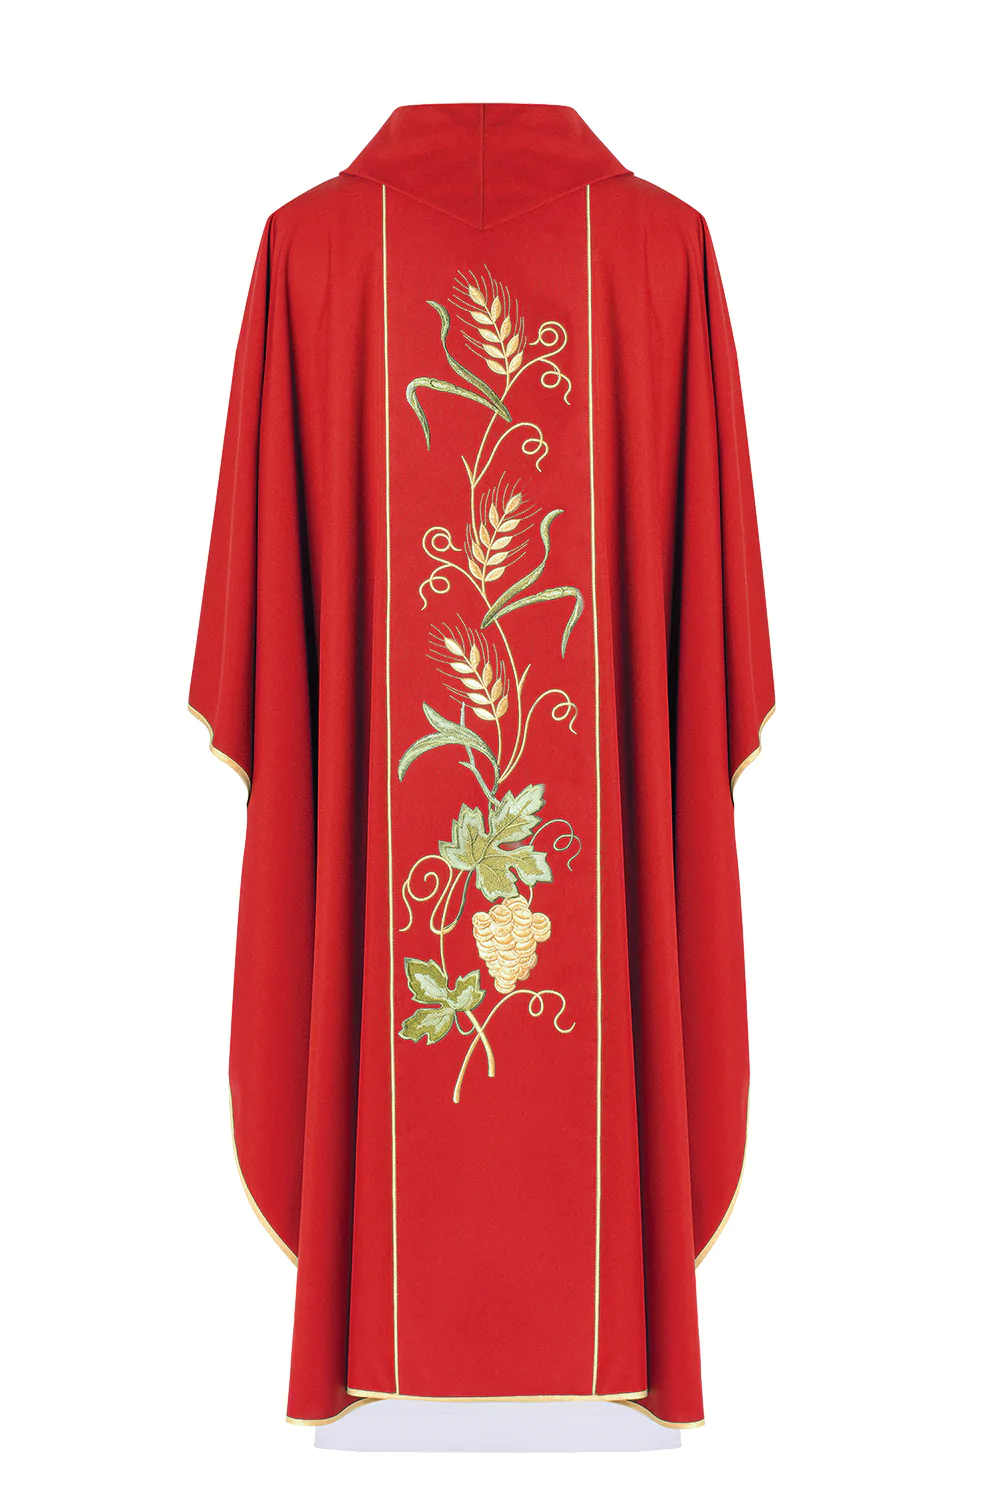 ornat czerwony dla księdza z kapturem oraz haftowanym pasem, biegnącym pionowo przez środek pleców, przedstawiającym symbol IHS, złote kłosy oraz winogrono